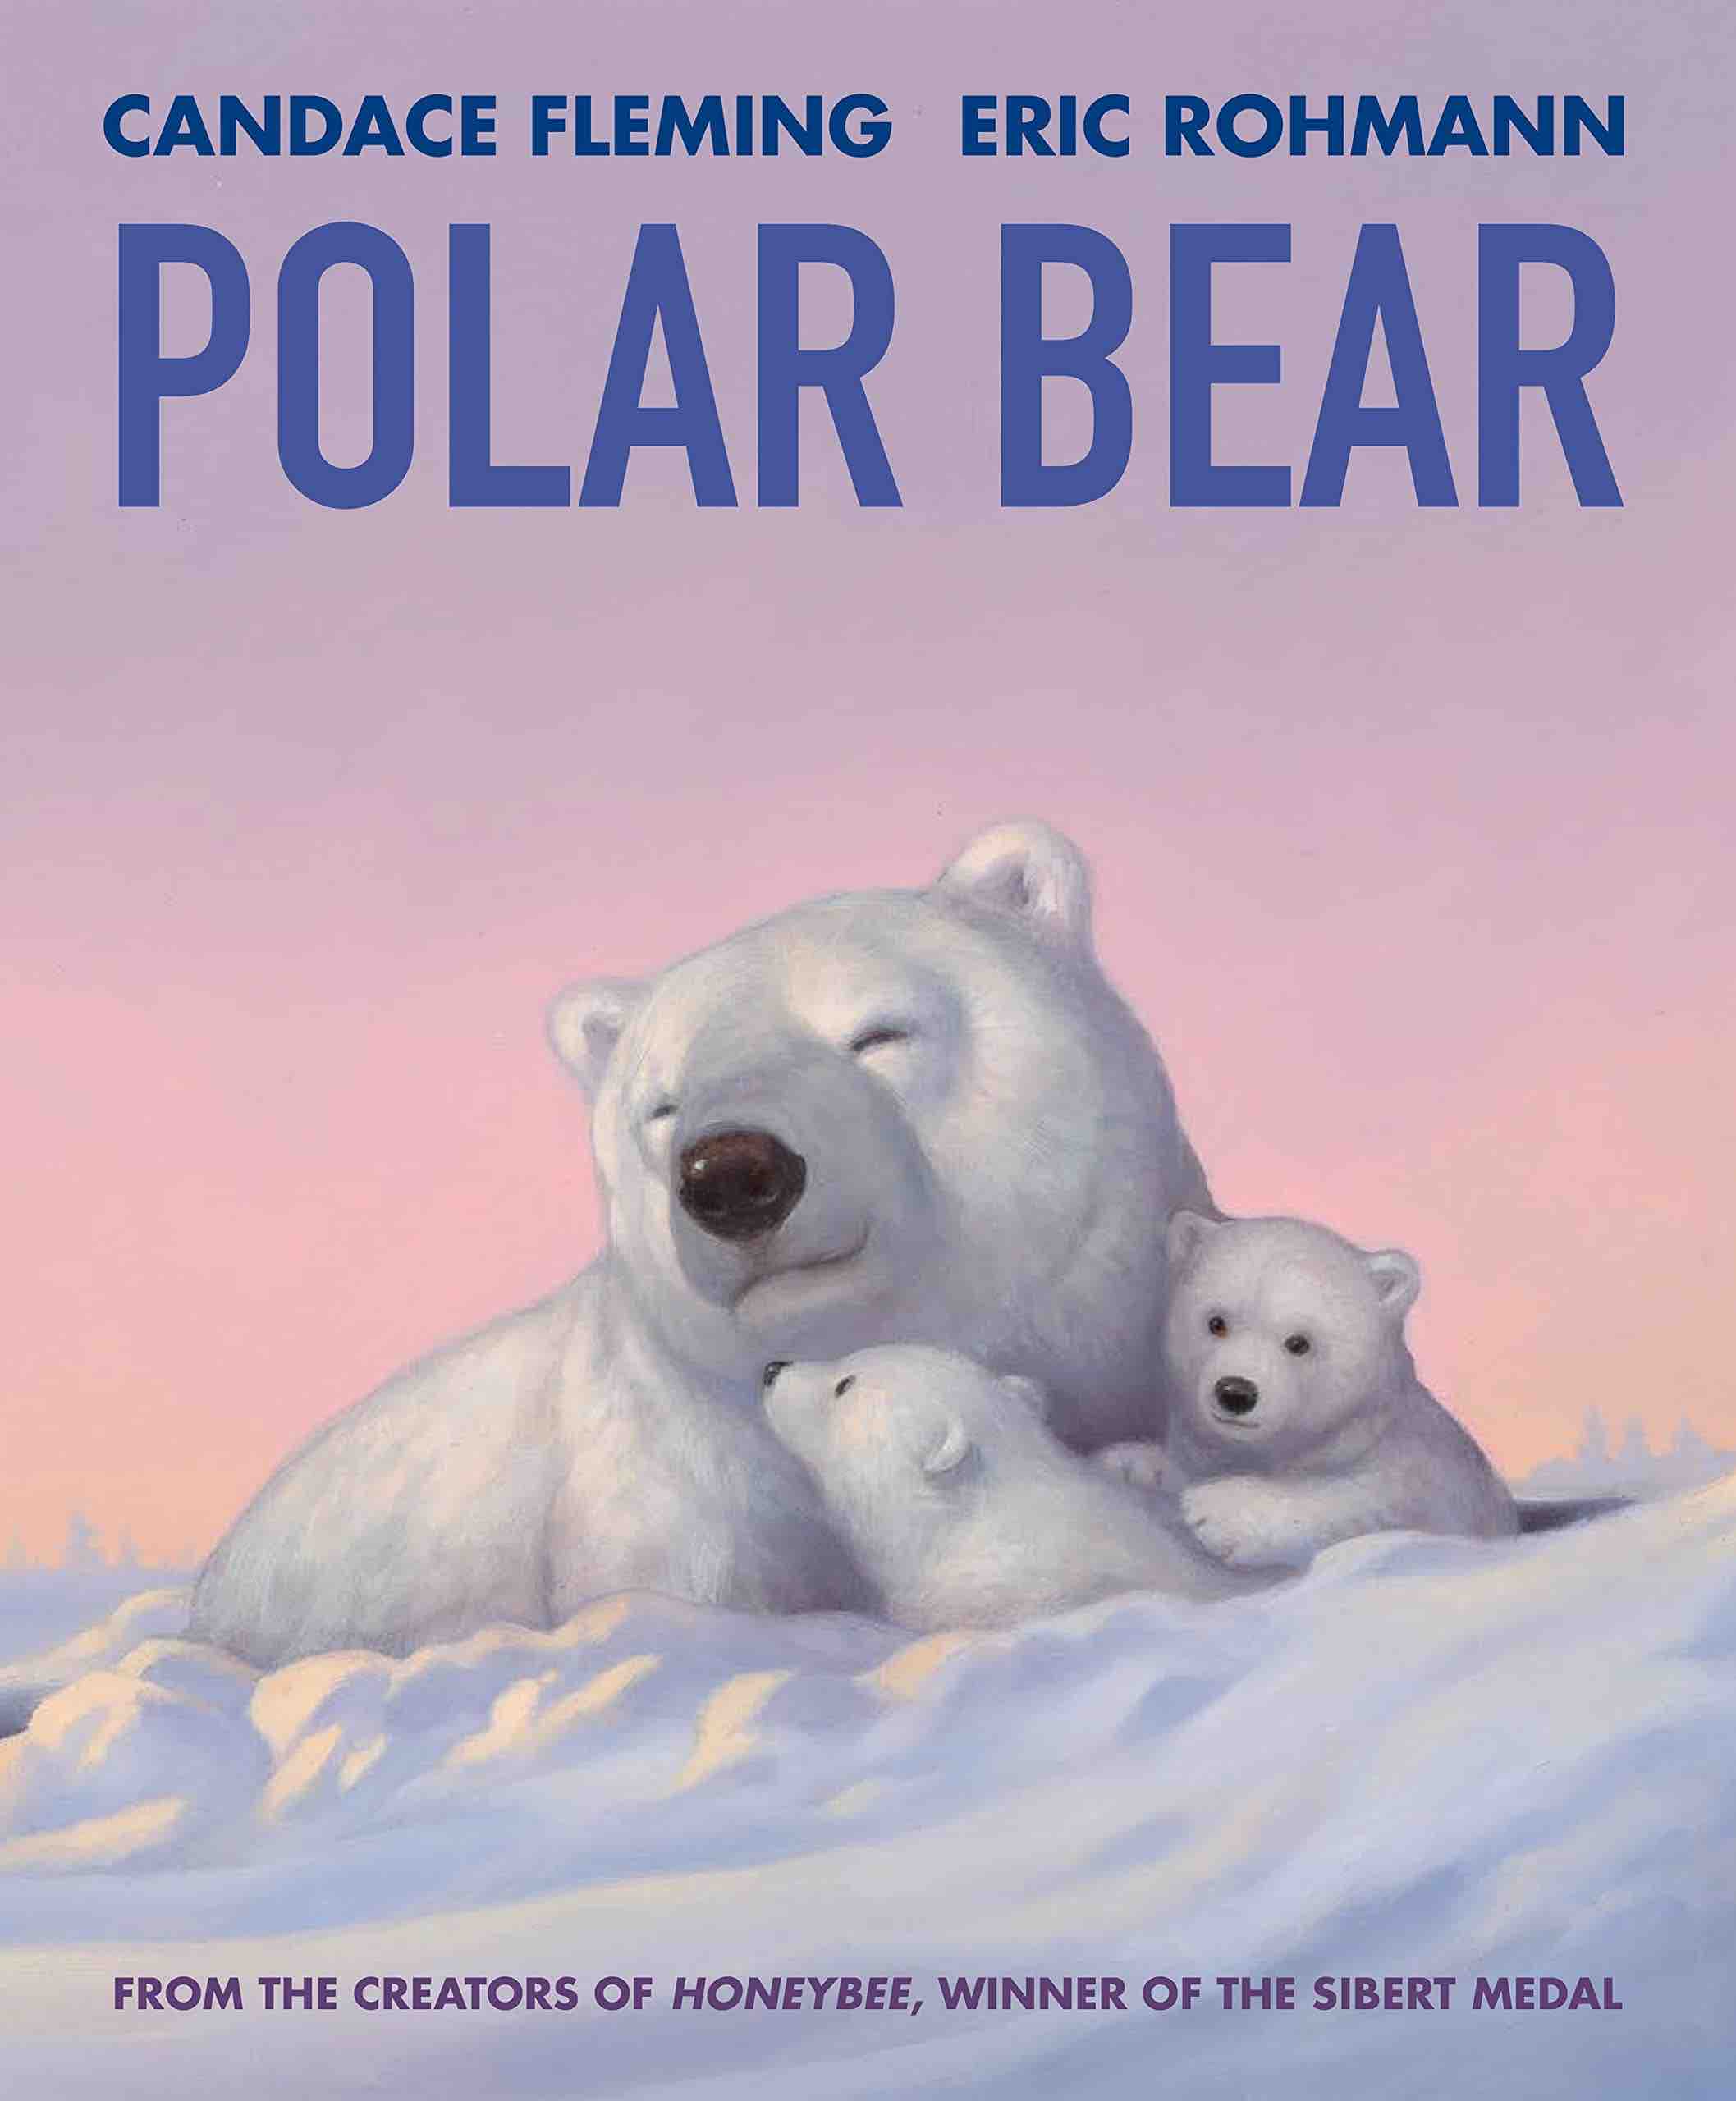 Polar Bear Flemming
